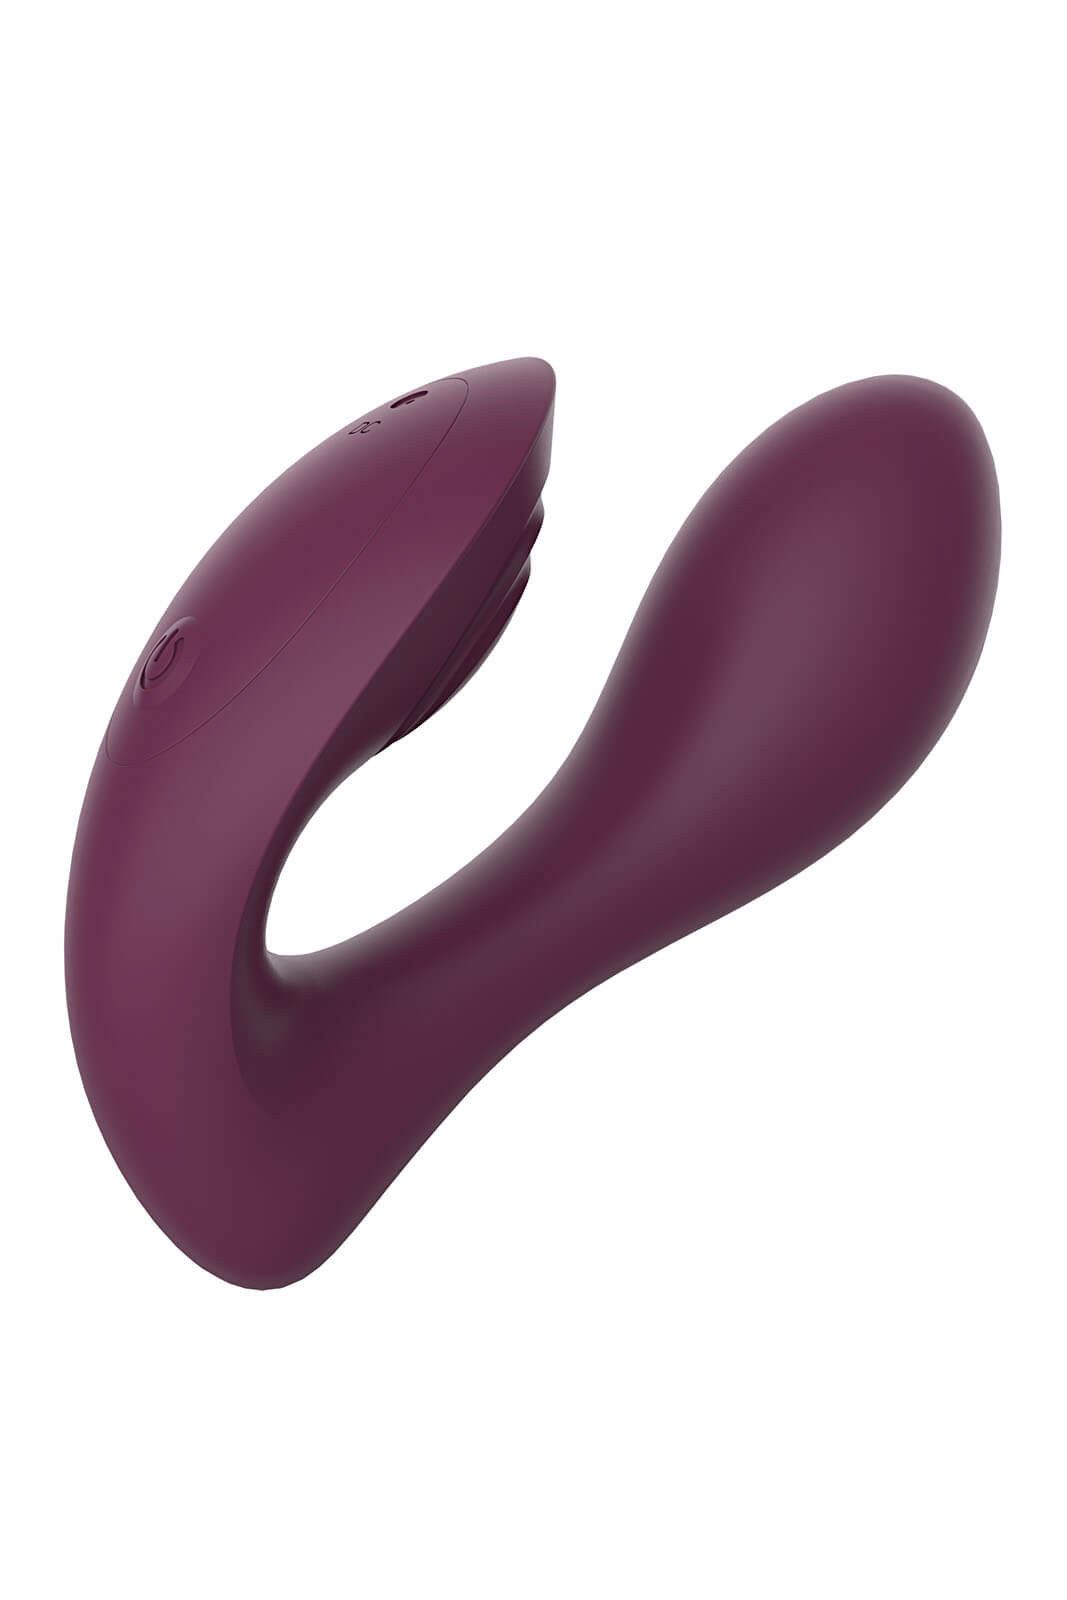 Dream Toys Essentials Ultra Dual Vibe (Purple), dvojitý vibrátor s ovladačem